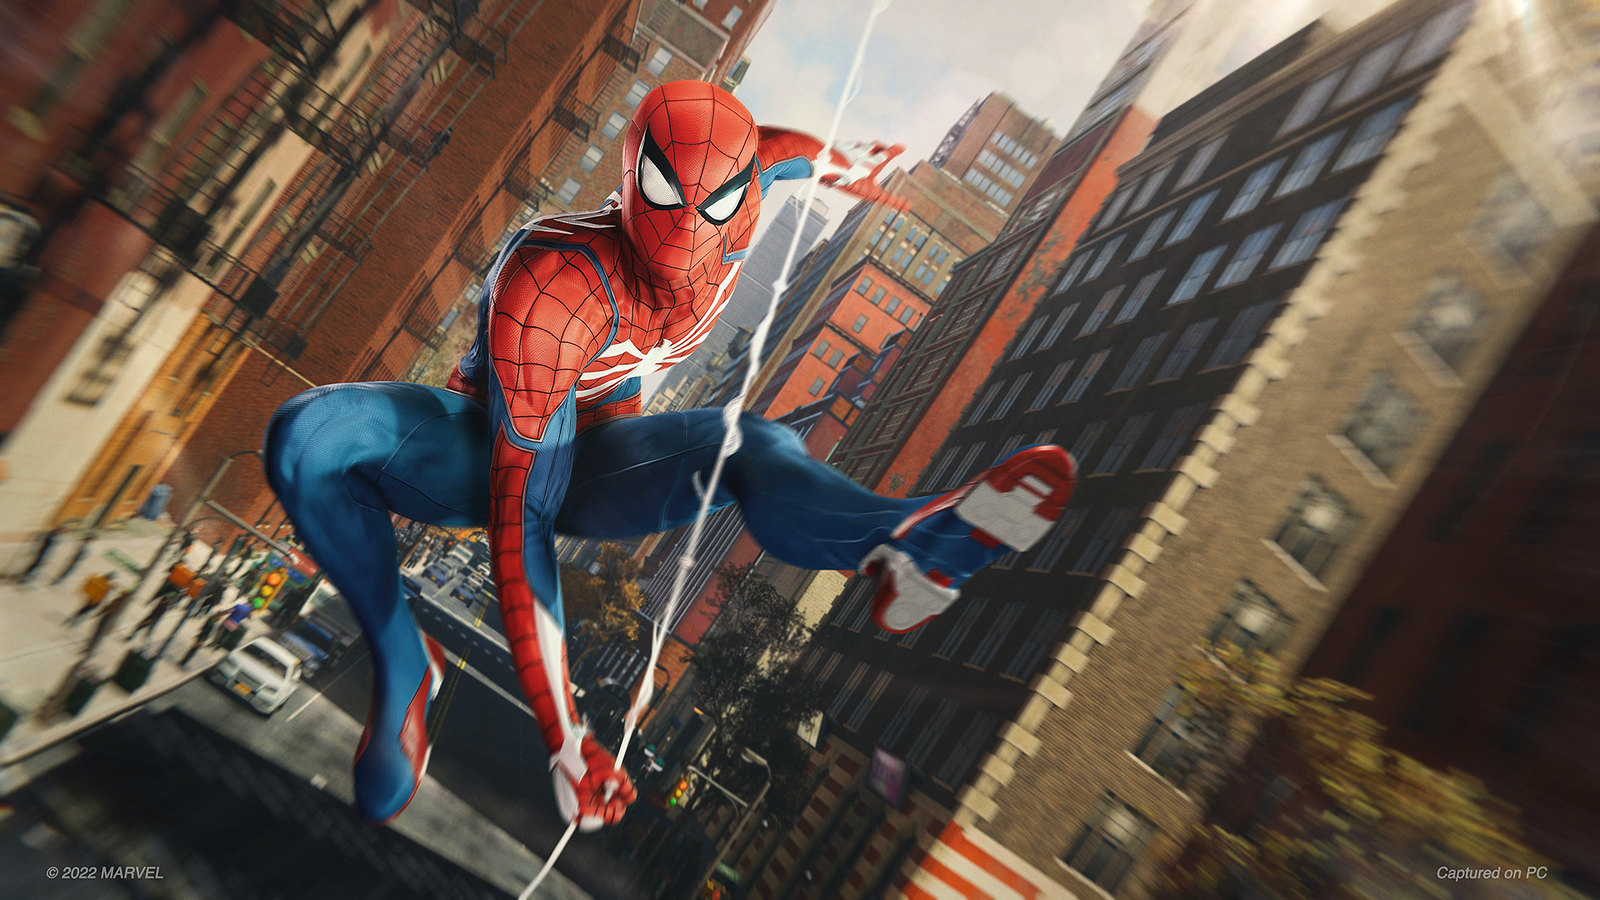 Conheça Spider-Man Miles Morales, nova expansão que chega ao PS5